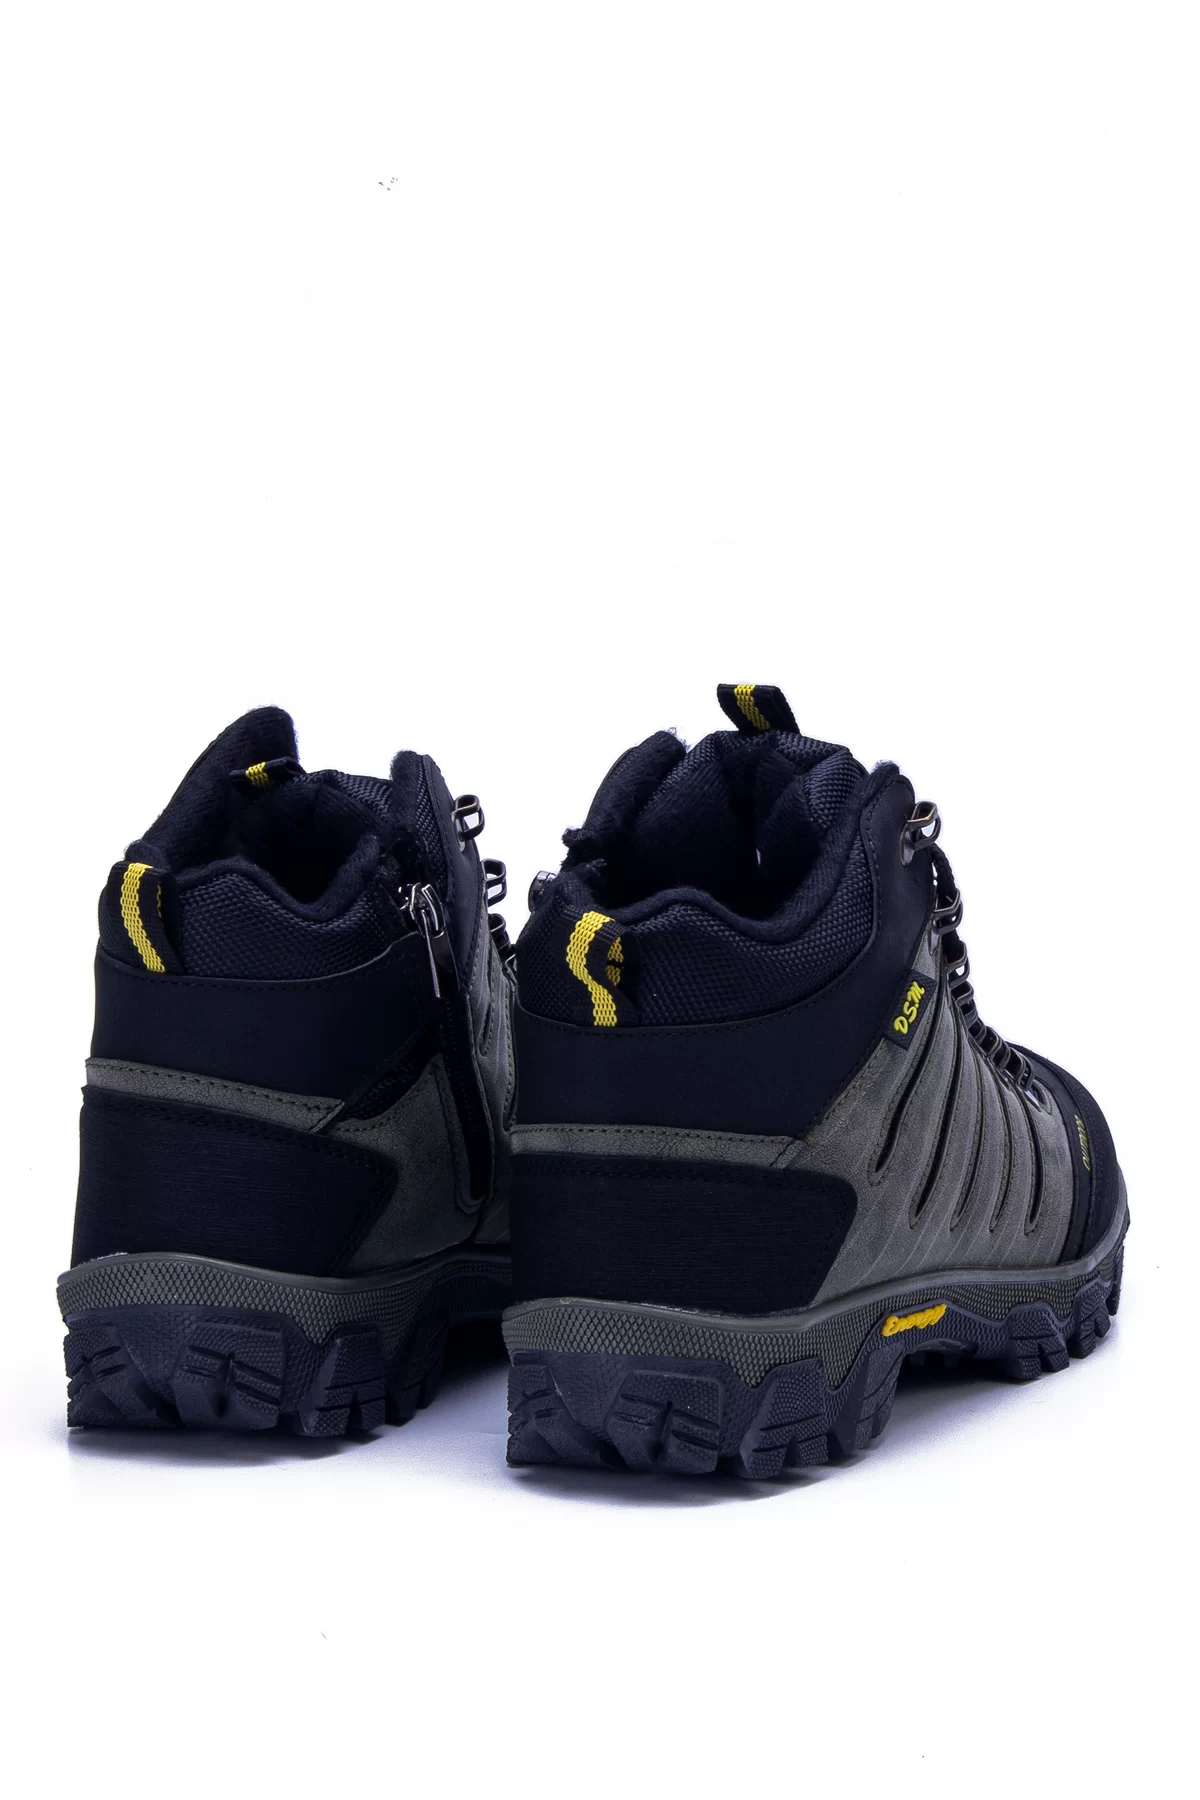 Unisex Outdoor Ayakkabı DSM2 - Haki